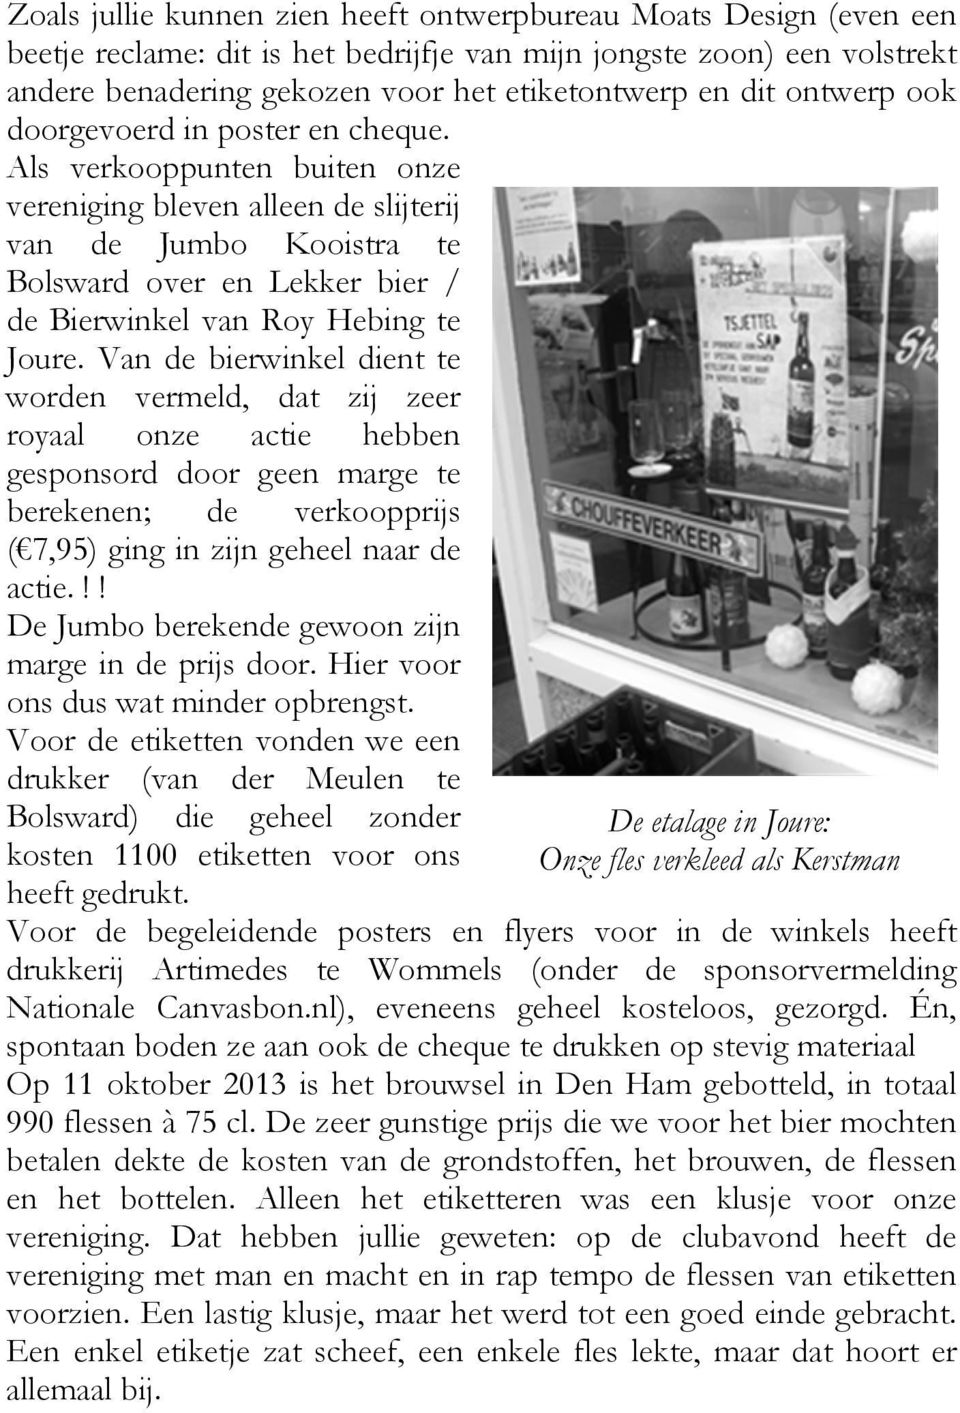 Als verkooppunten buiten onze vereniging bleven alleen de slijterij van de Jumbo Kooistra te Bolsward over en Lekker bier / de Bierwinkel van Roy Hebing te Joure.